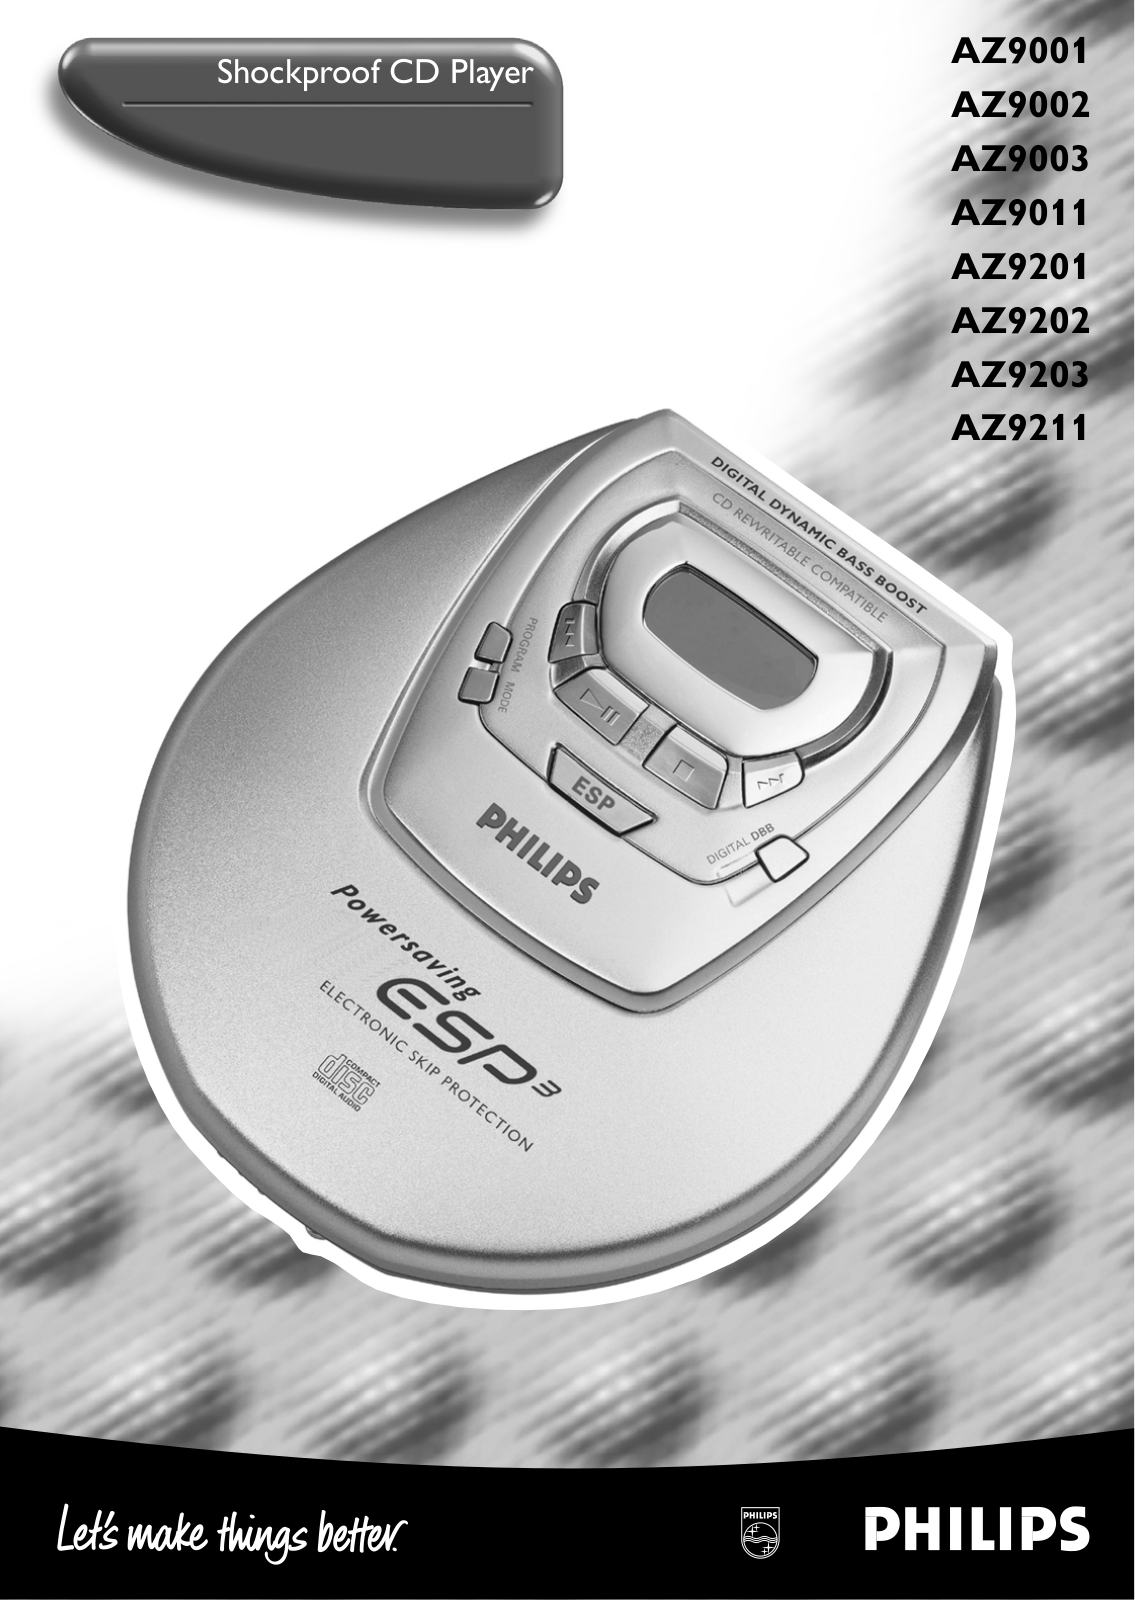 Philips AZ9001, AZ9002, AZ9003, AZ9011, AZ9201 User Manual